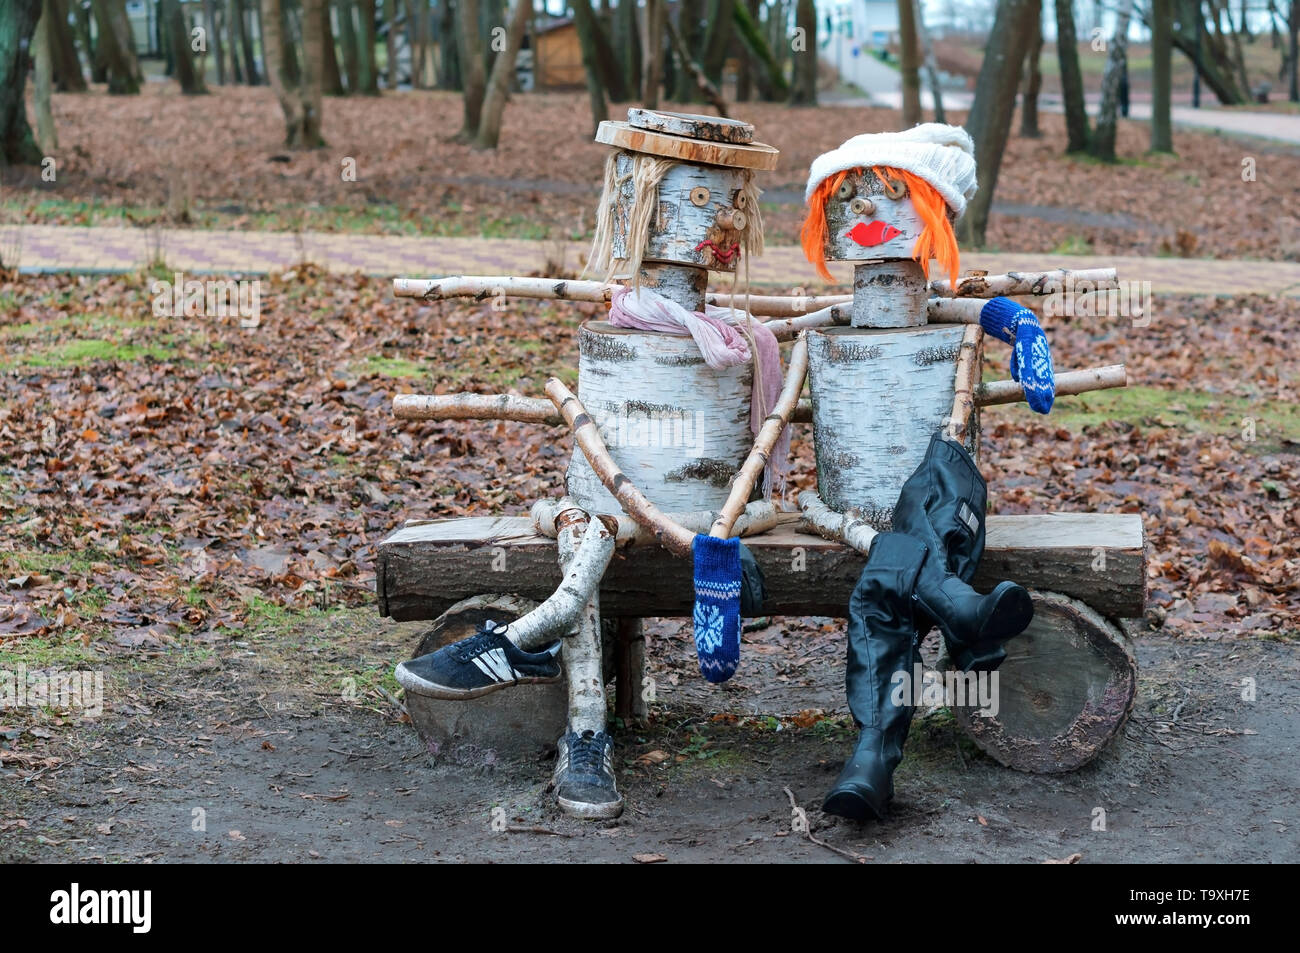 Escultura de abedul, el hombre y la mujer en el banquillo, escultura en madera, Yantarny village, la región de Kaliningrado, Rusia, 20 de enero de 2019 Foto de stock